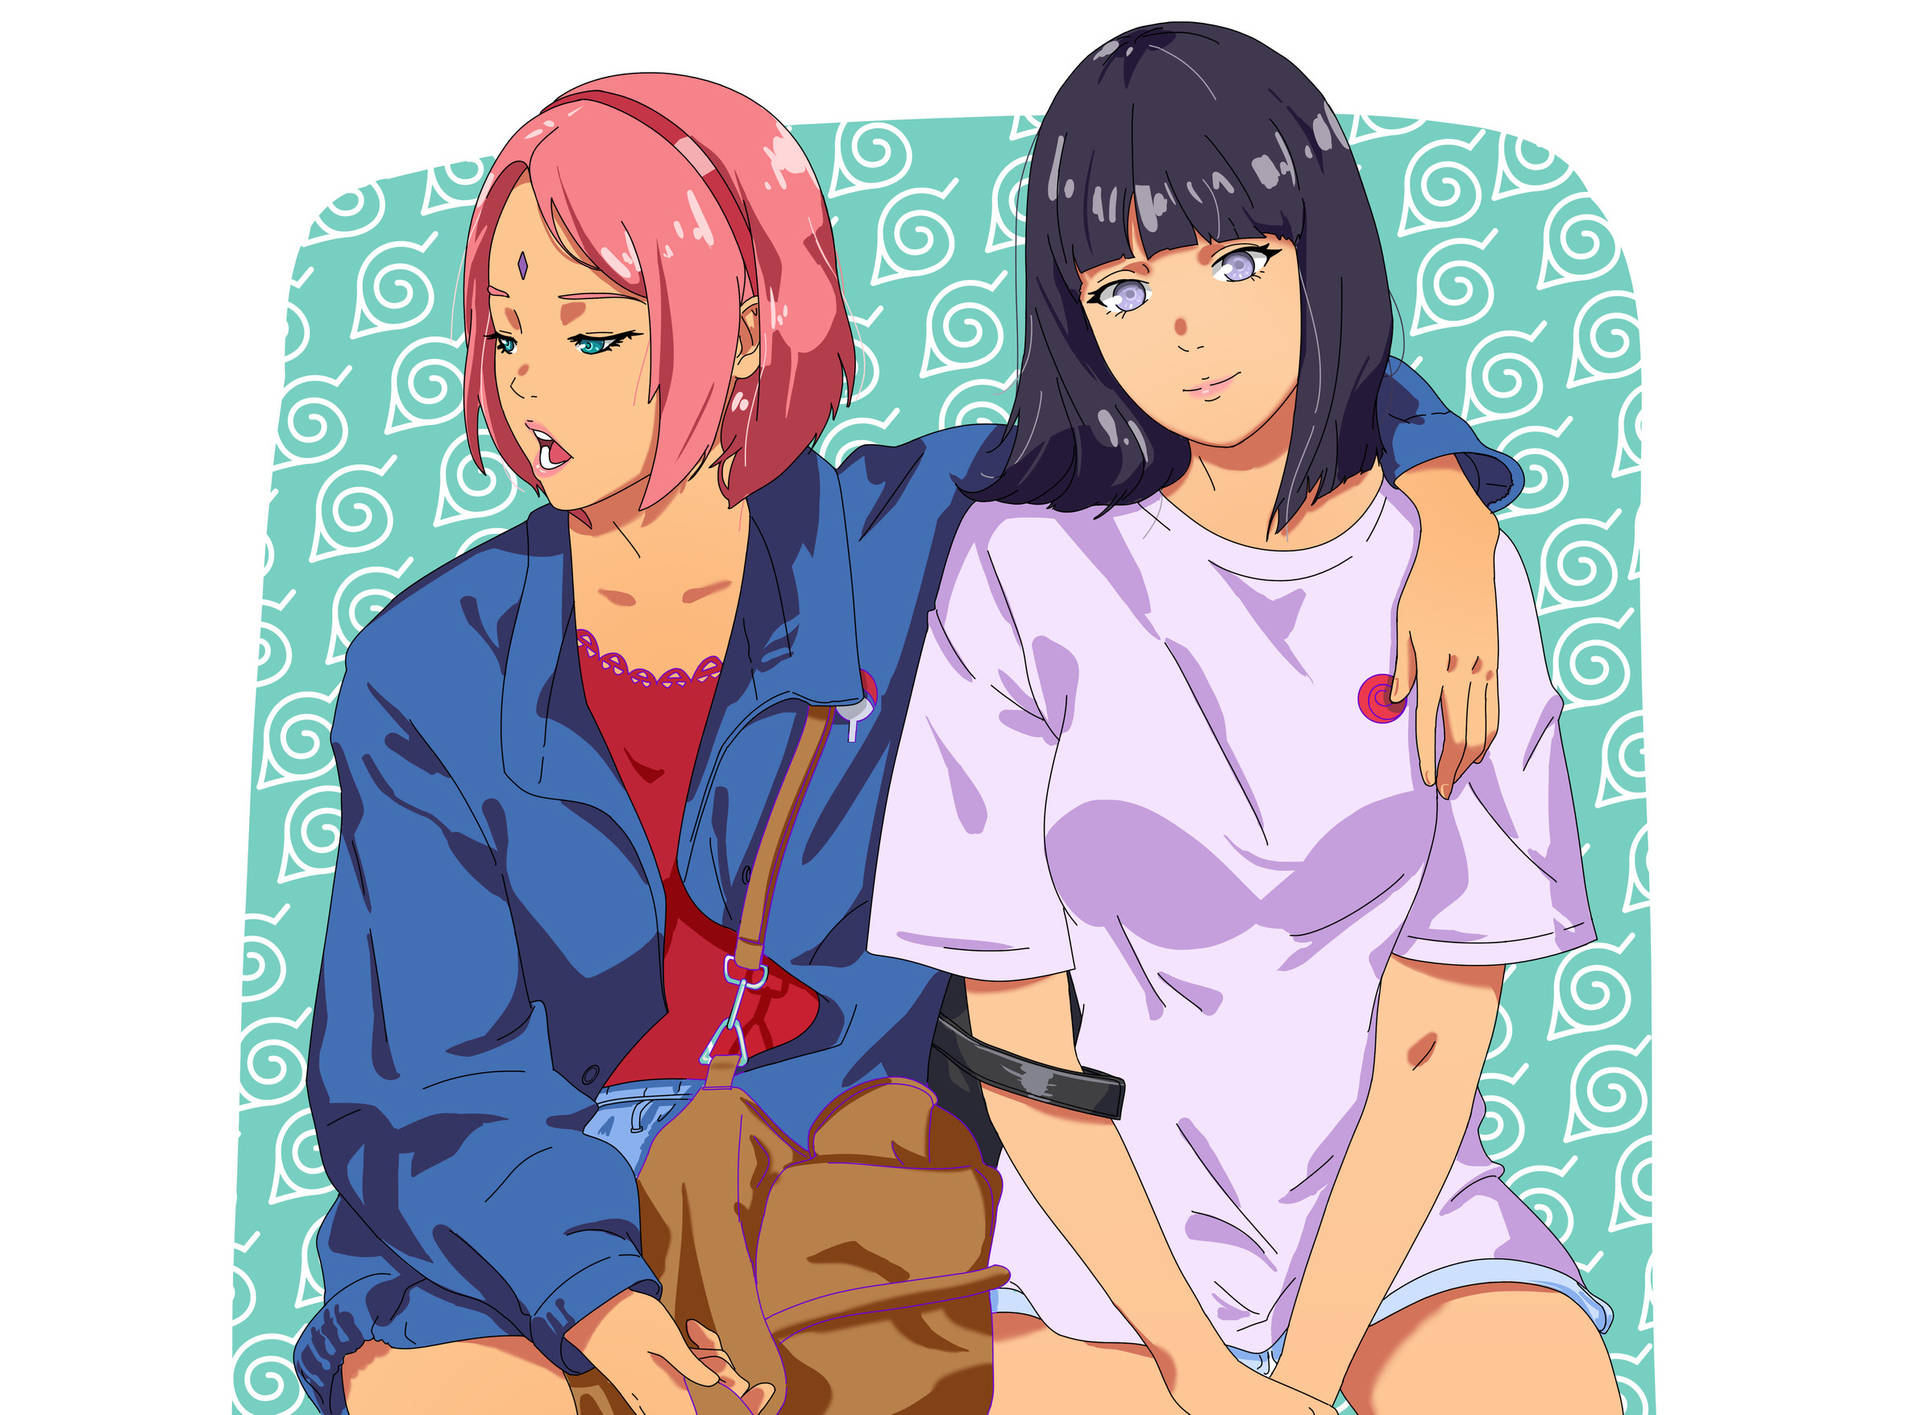 Sakura And Hinata